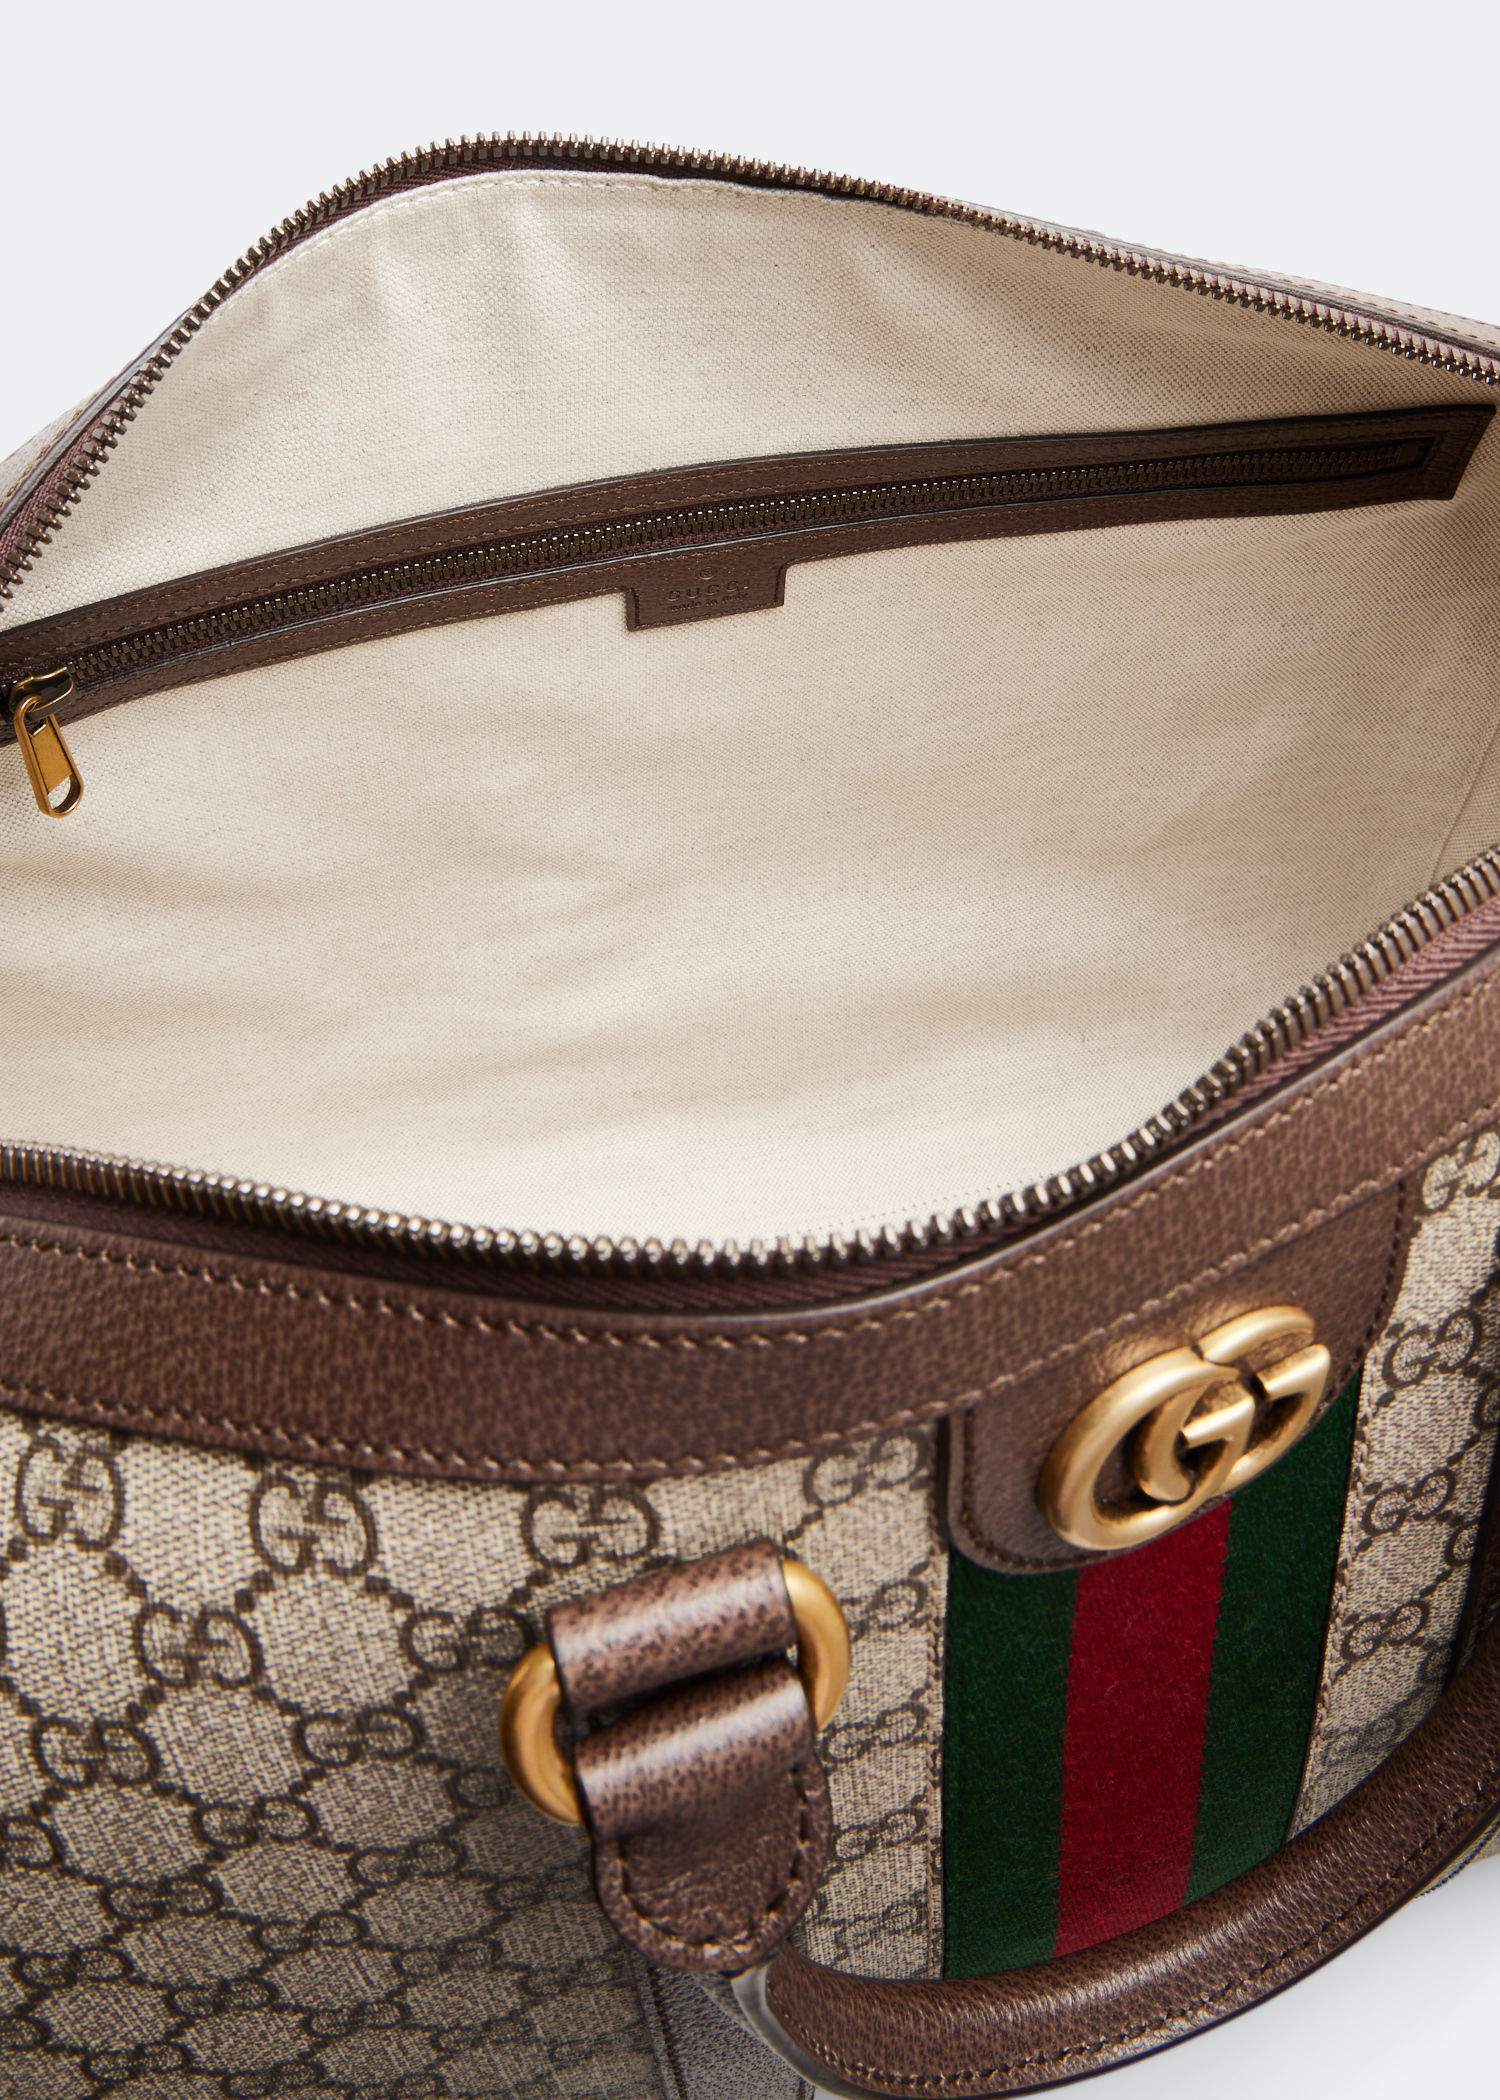 Gucci Savoy medium bowling bag in beige and ebony Supreme